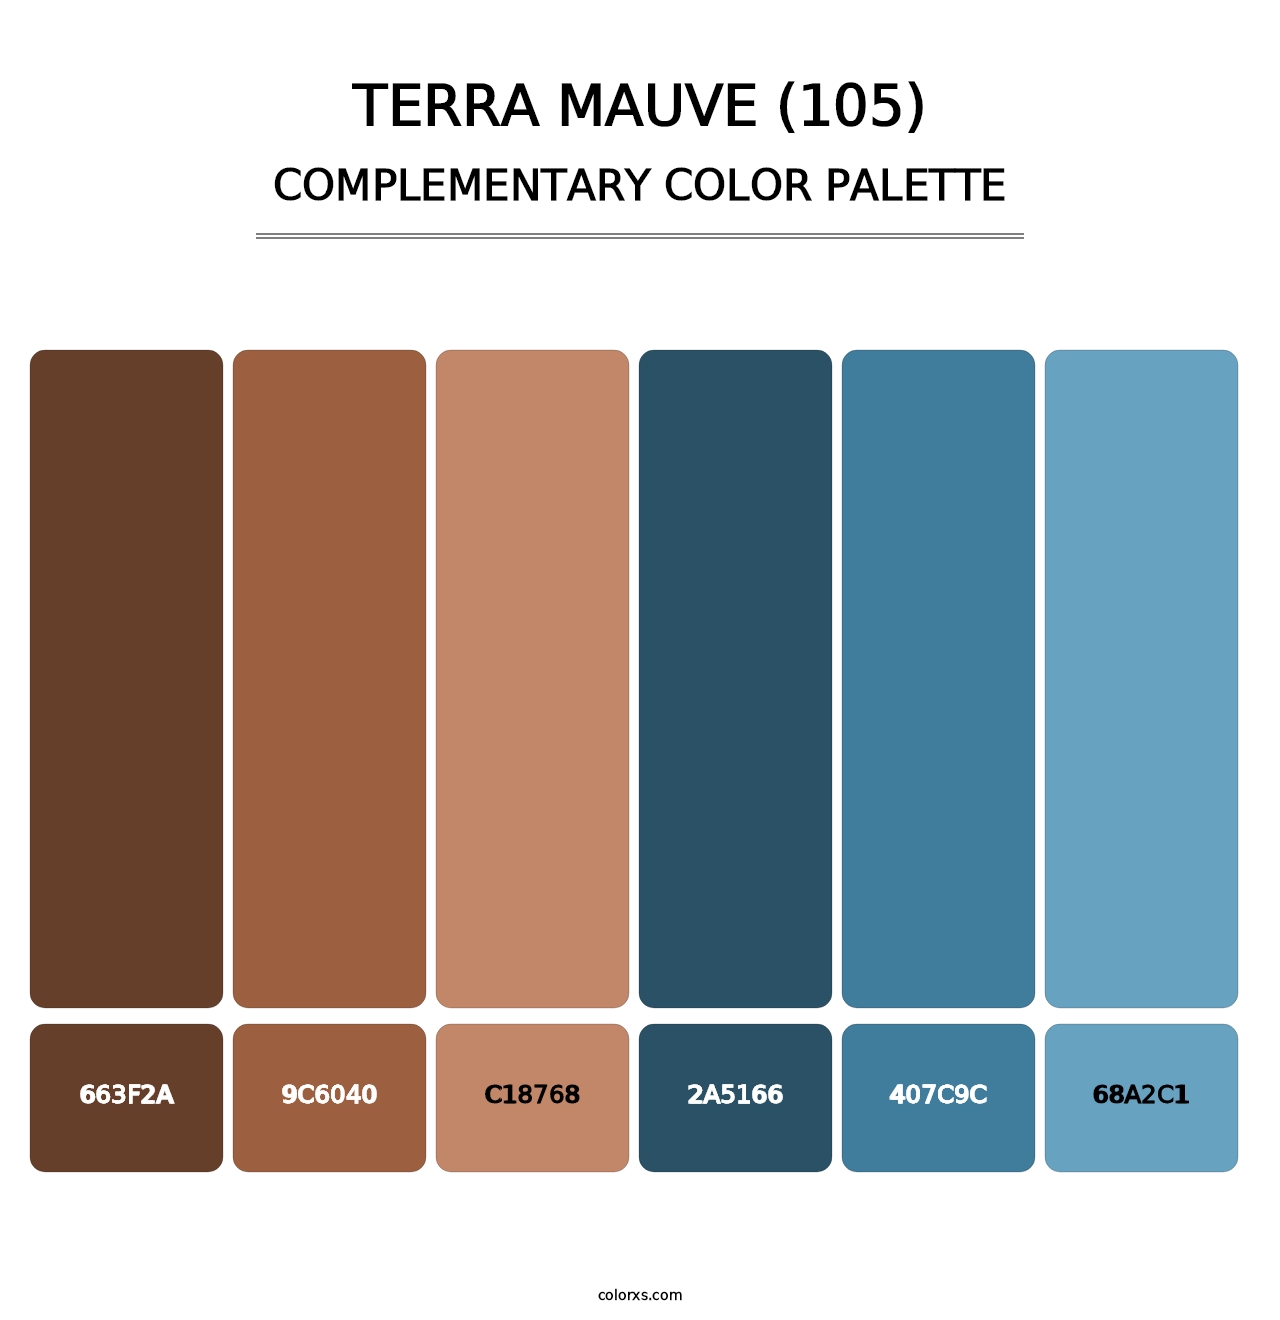 Terra Mauve (105) - Complementary Color Palette